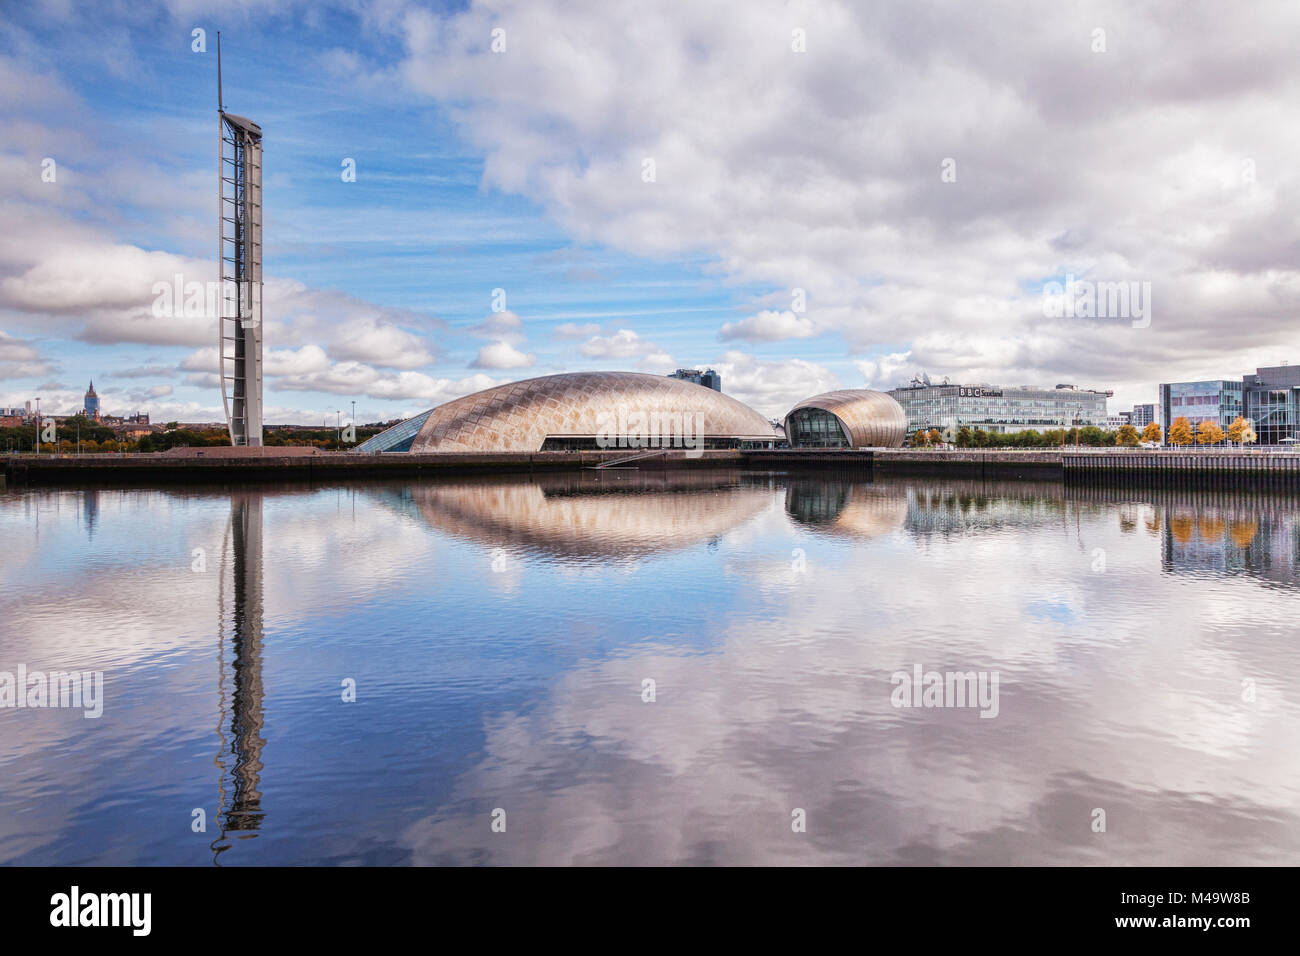 La torre di Glasgow, il Science Center, il Cinema Imax e BBC Scotland HQ, parte del Clyde Waterfront rigenerazione, Glasgow, Scotland, Regno Unito Foto Stock